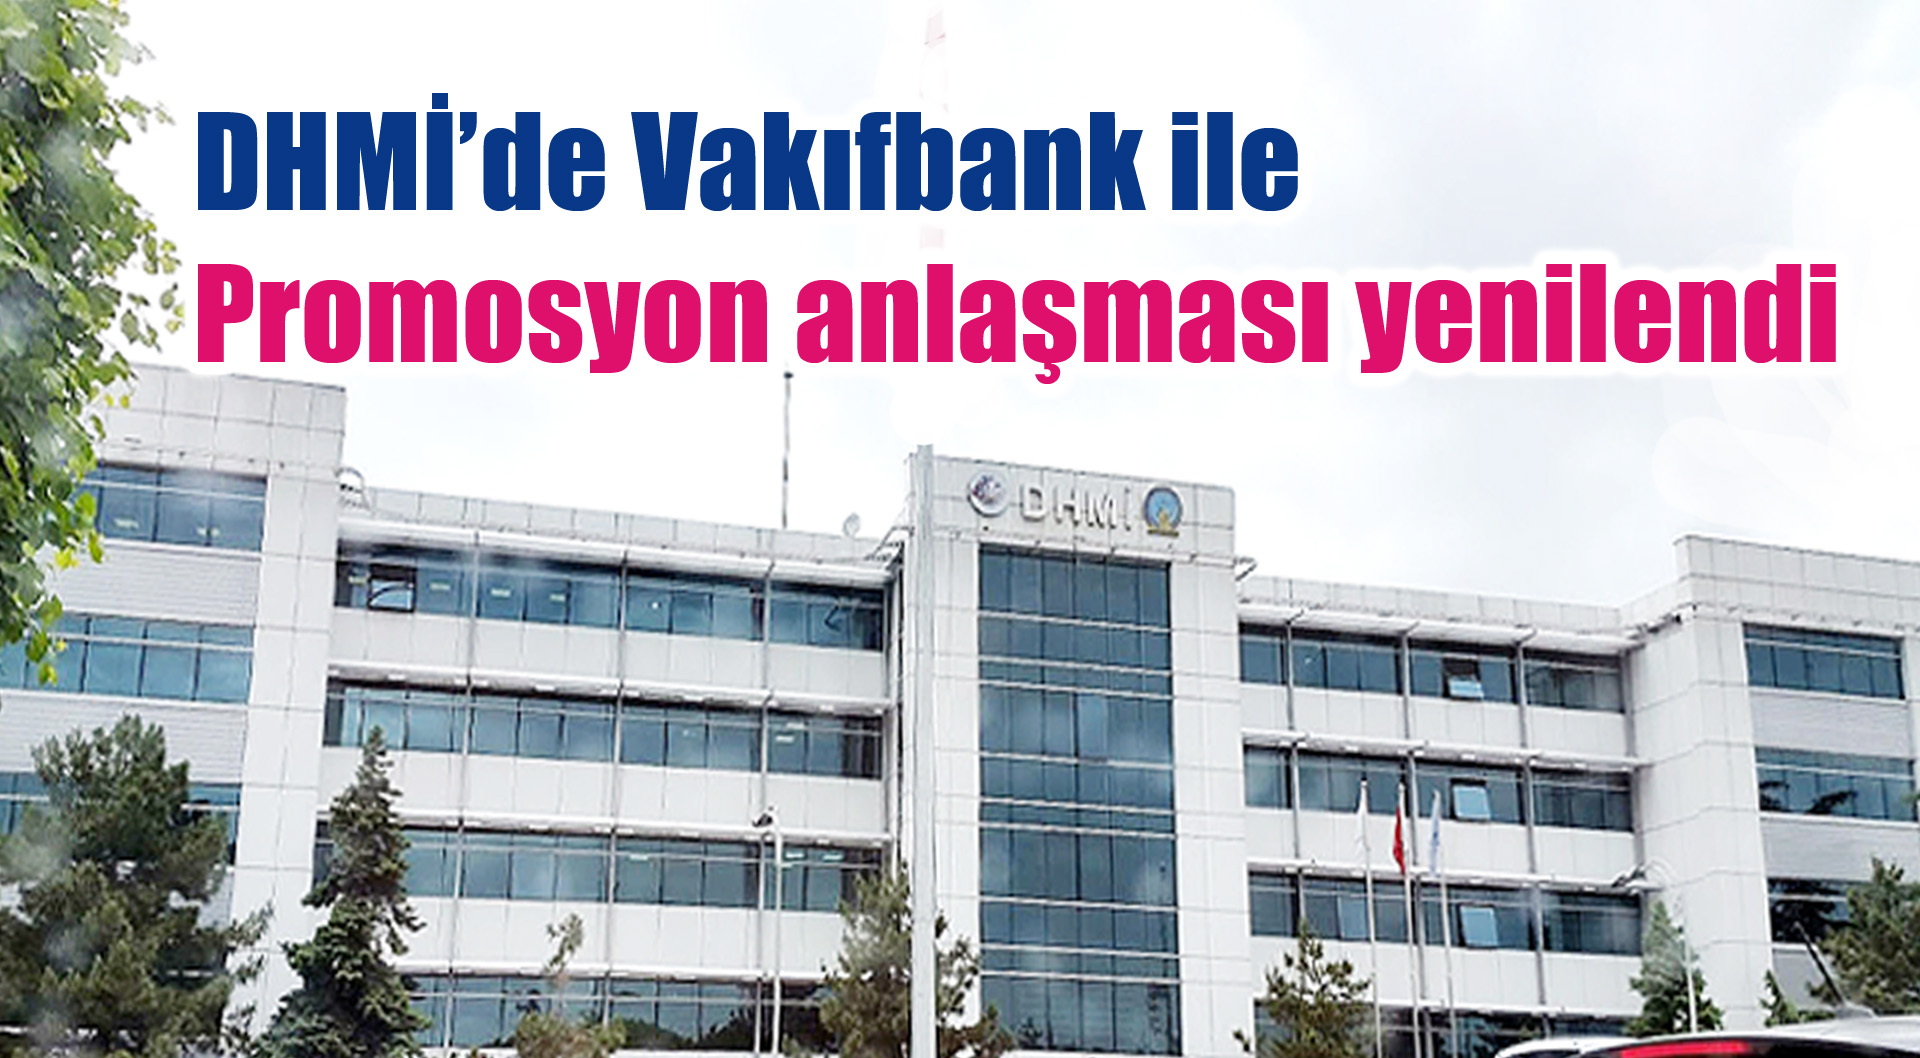 DHMİ’de Vakıfbank ile Promosyon anlaşması yenilendi